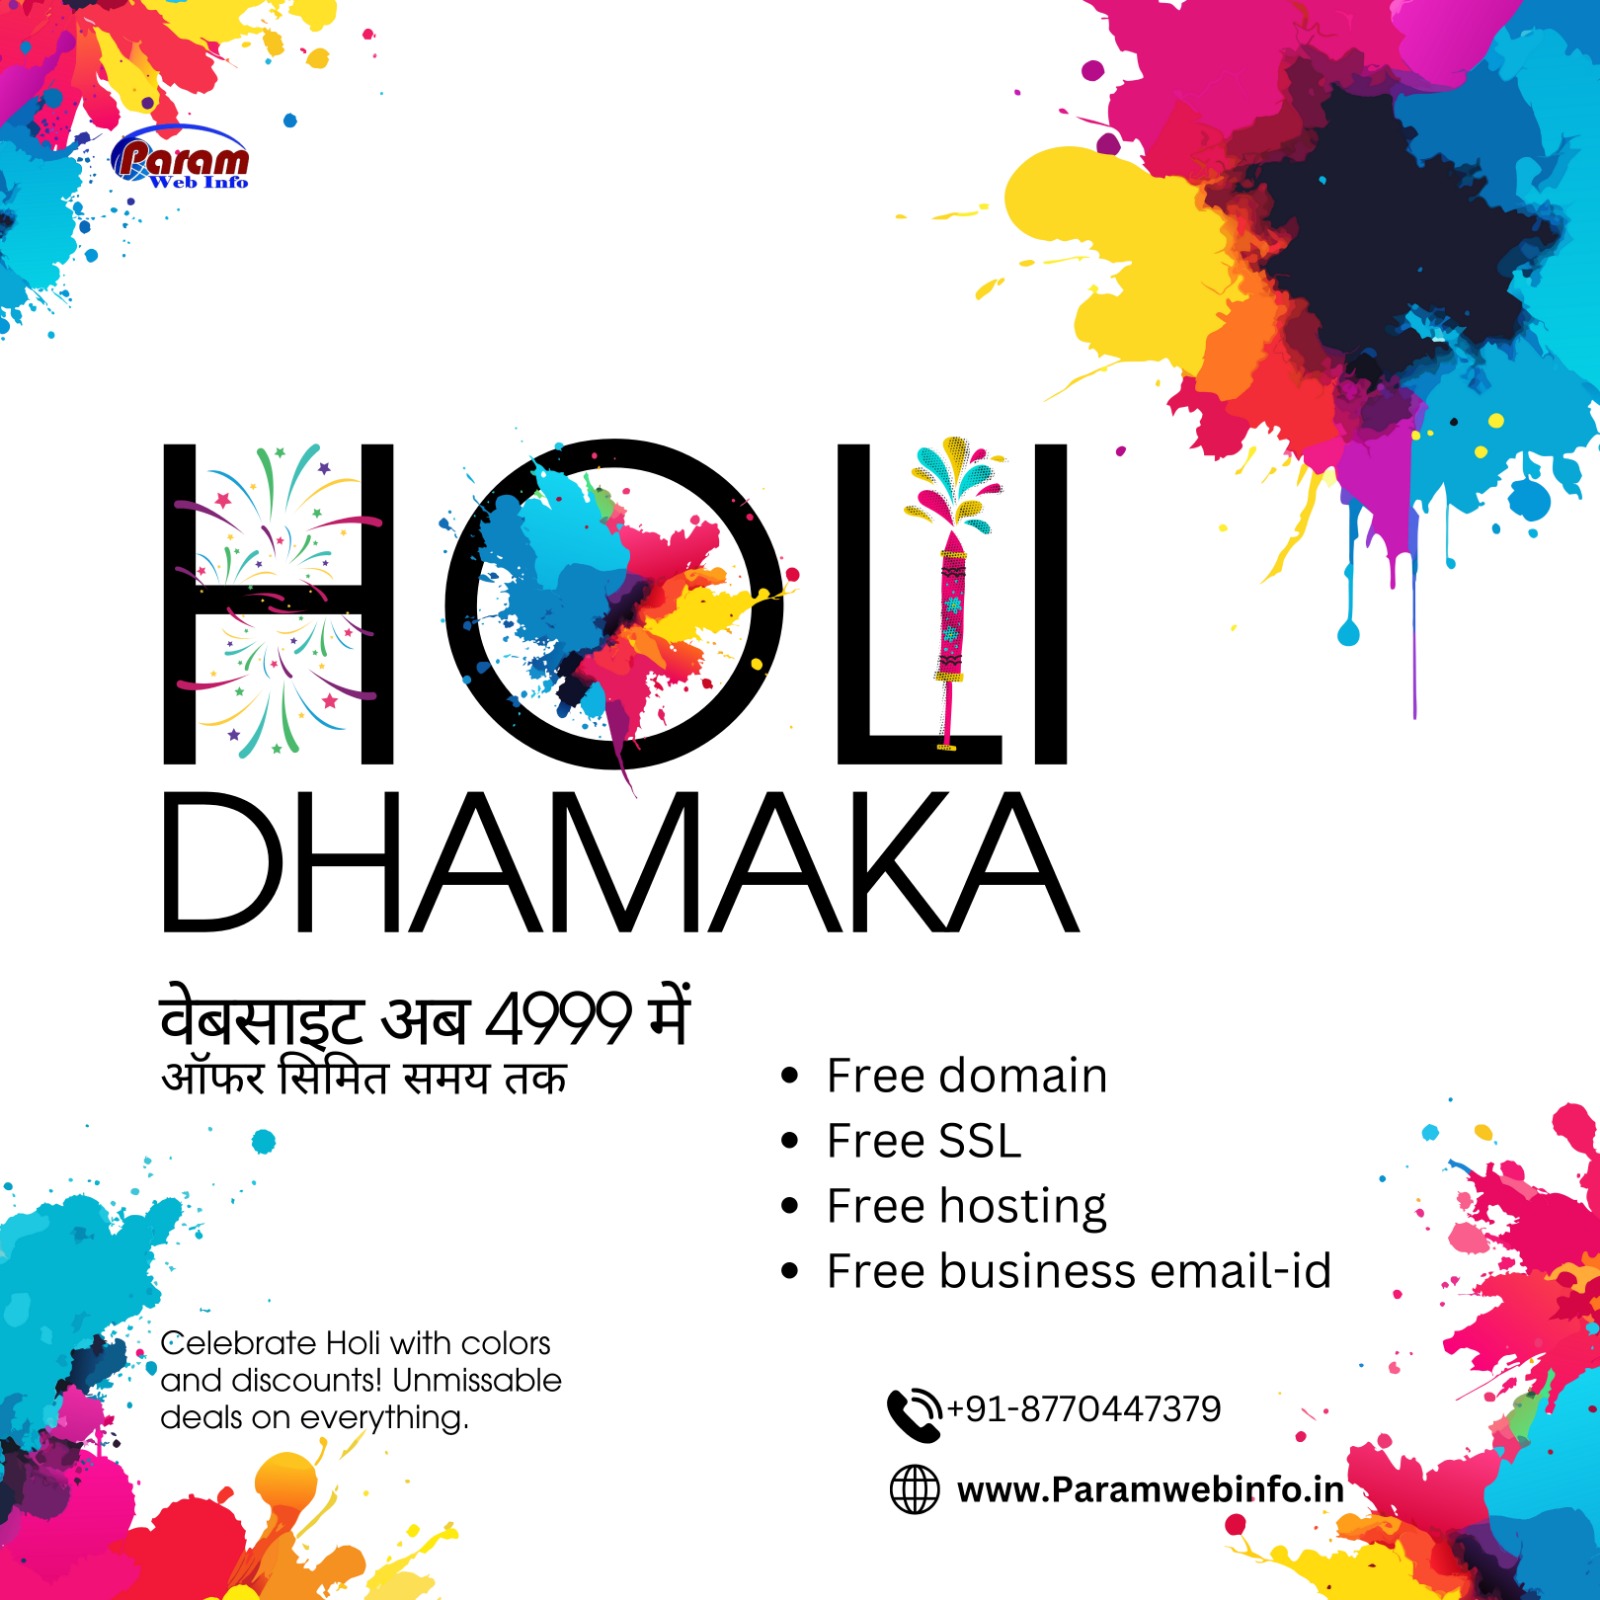 Digital marketing Holi festival offer website development 4999 only in Raipur.